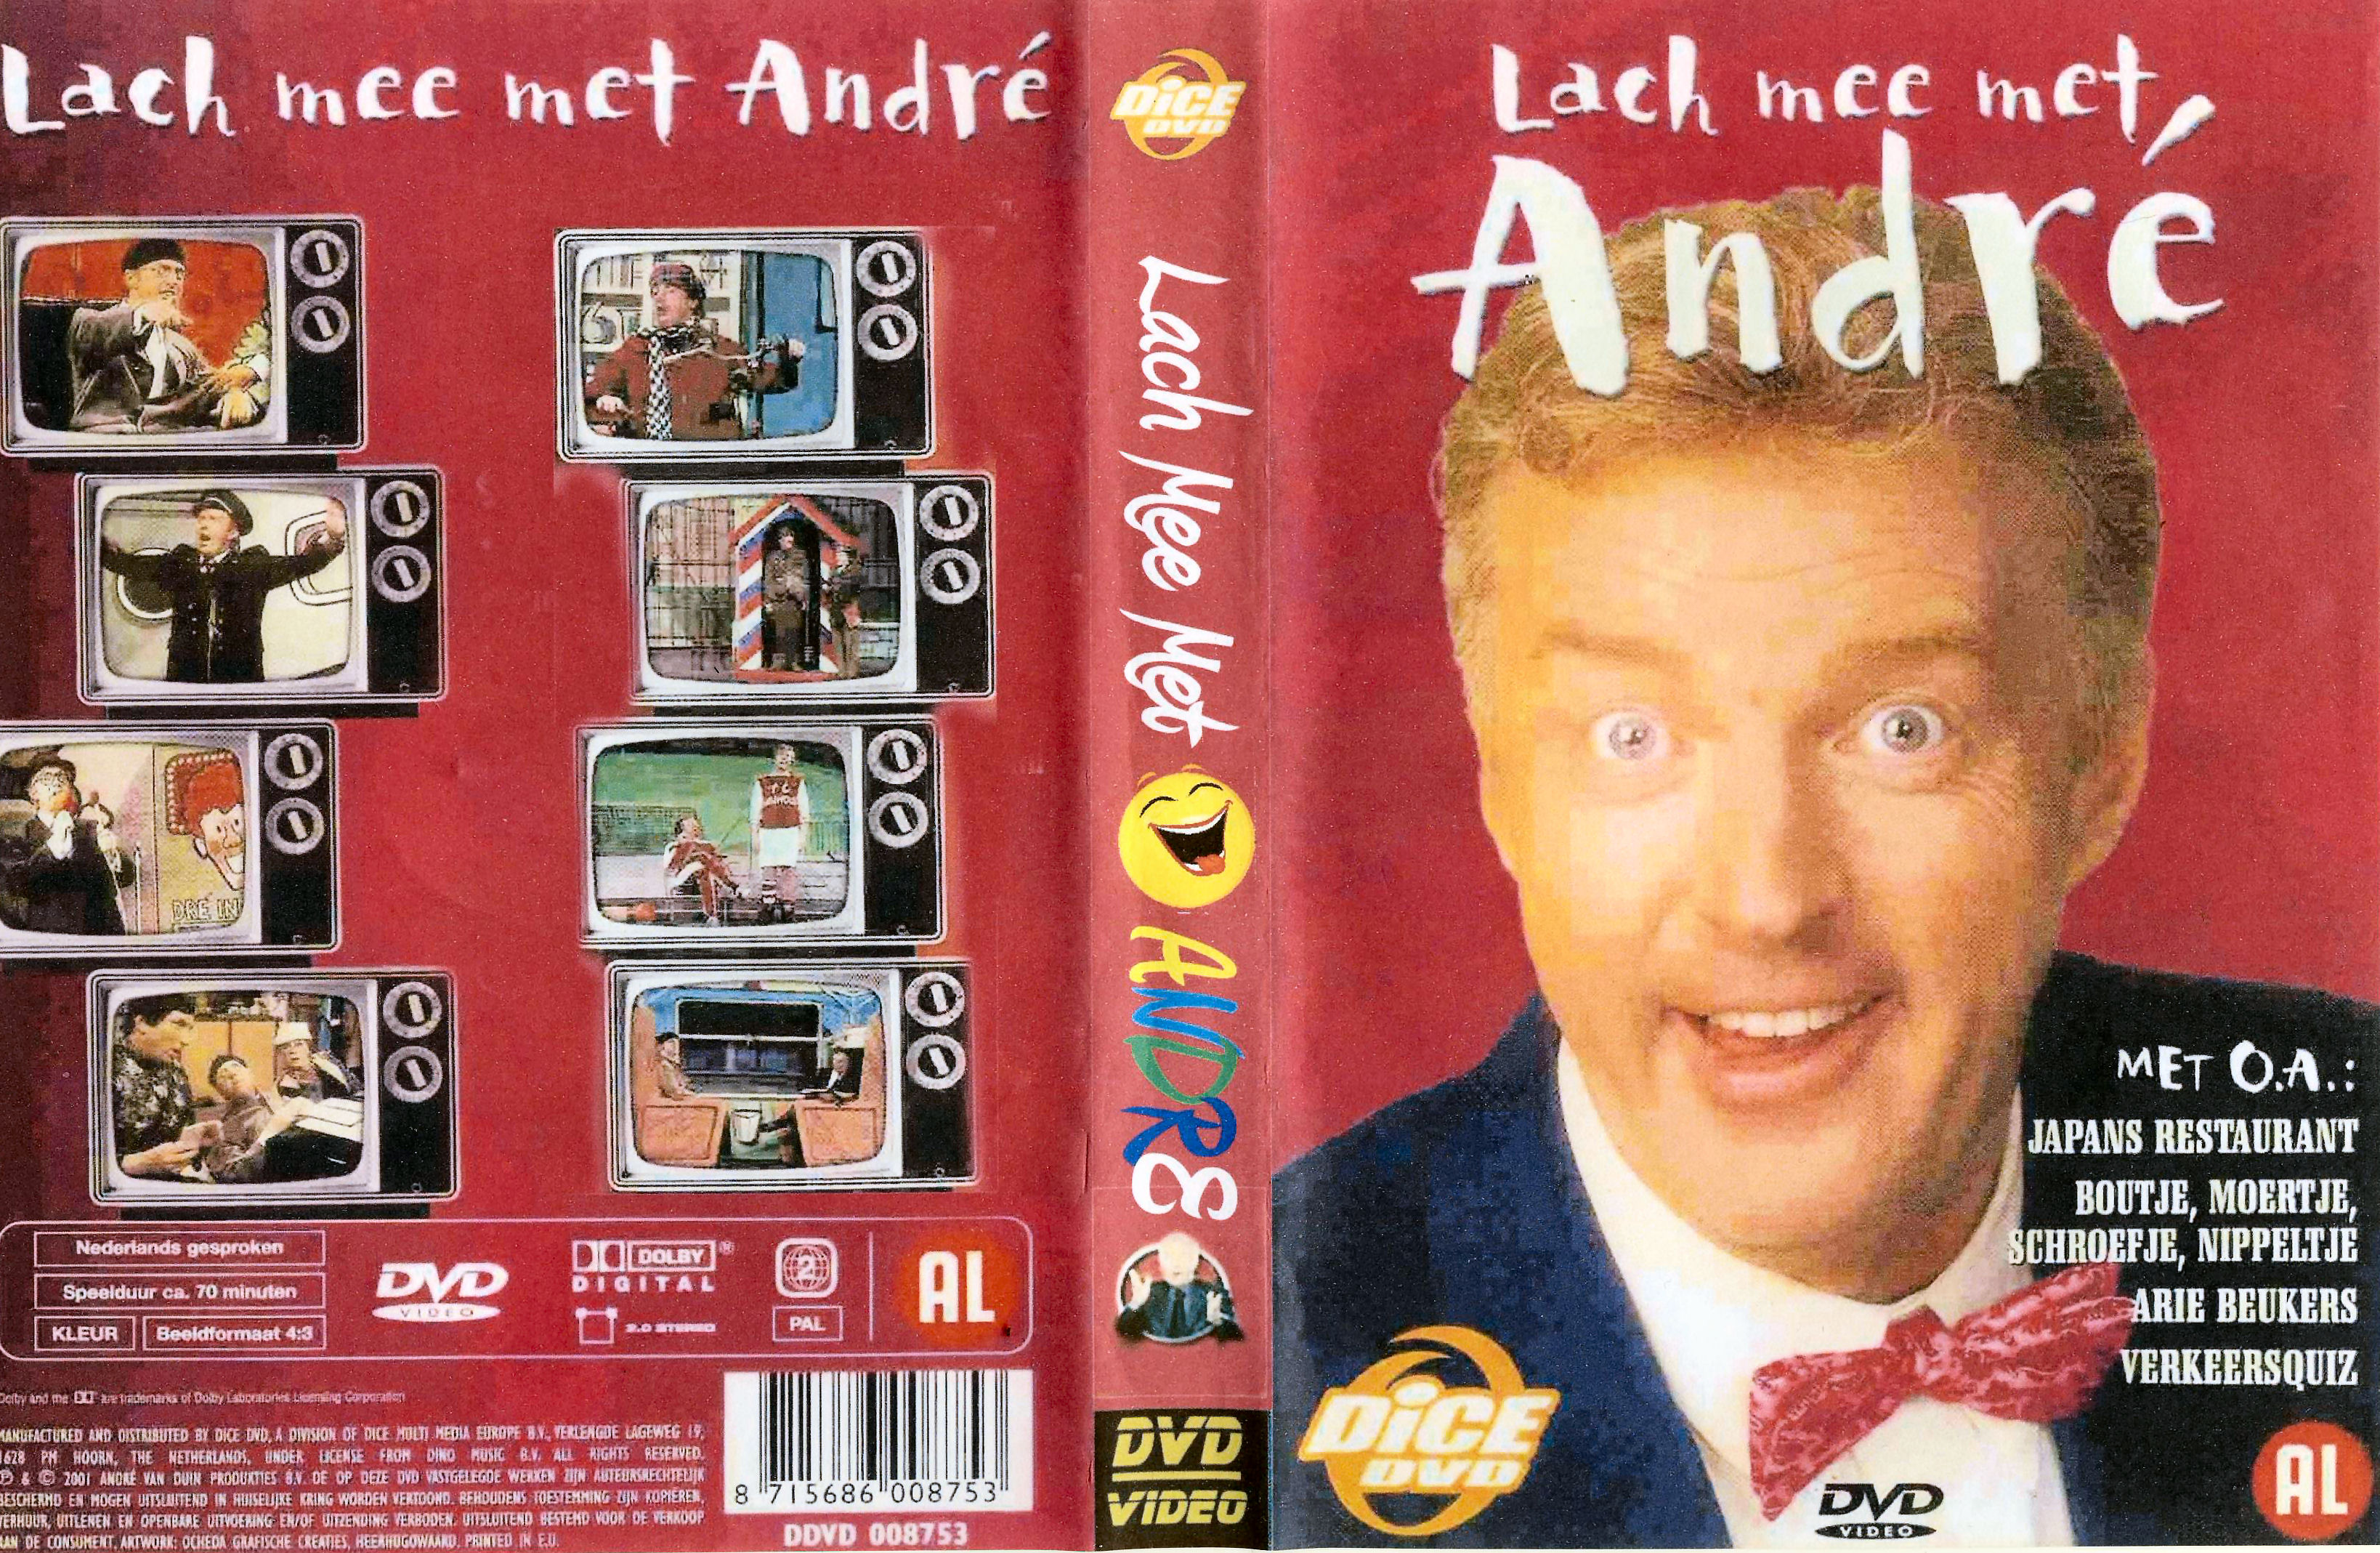 Lach mee met Andre DVD 4 van 6